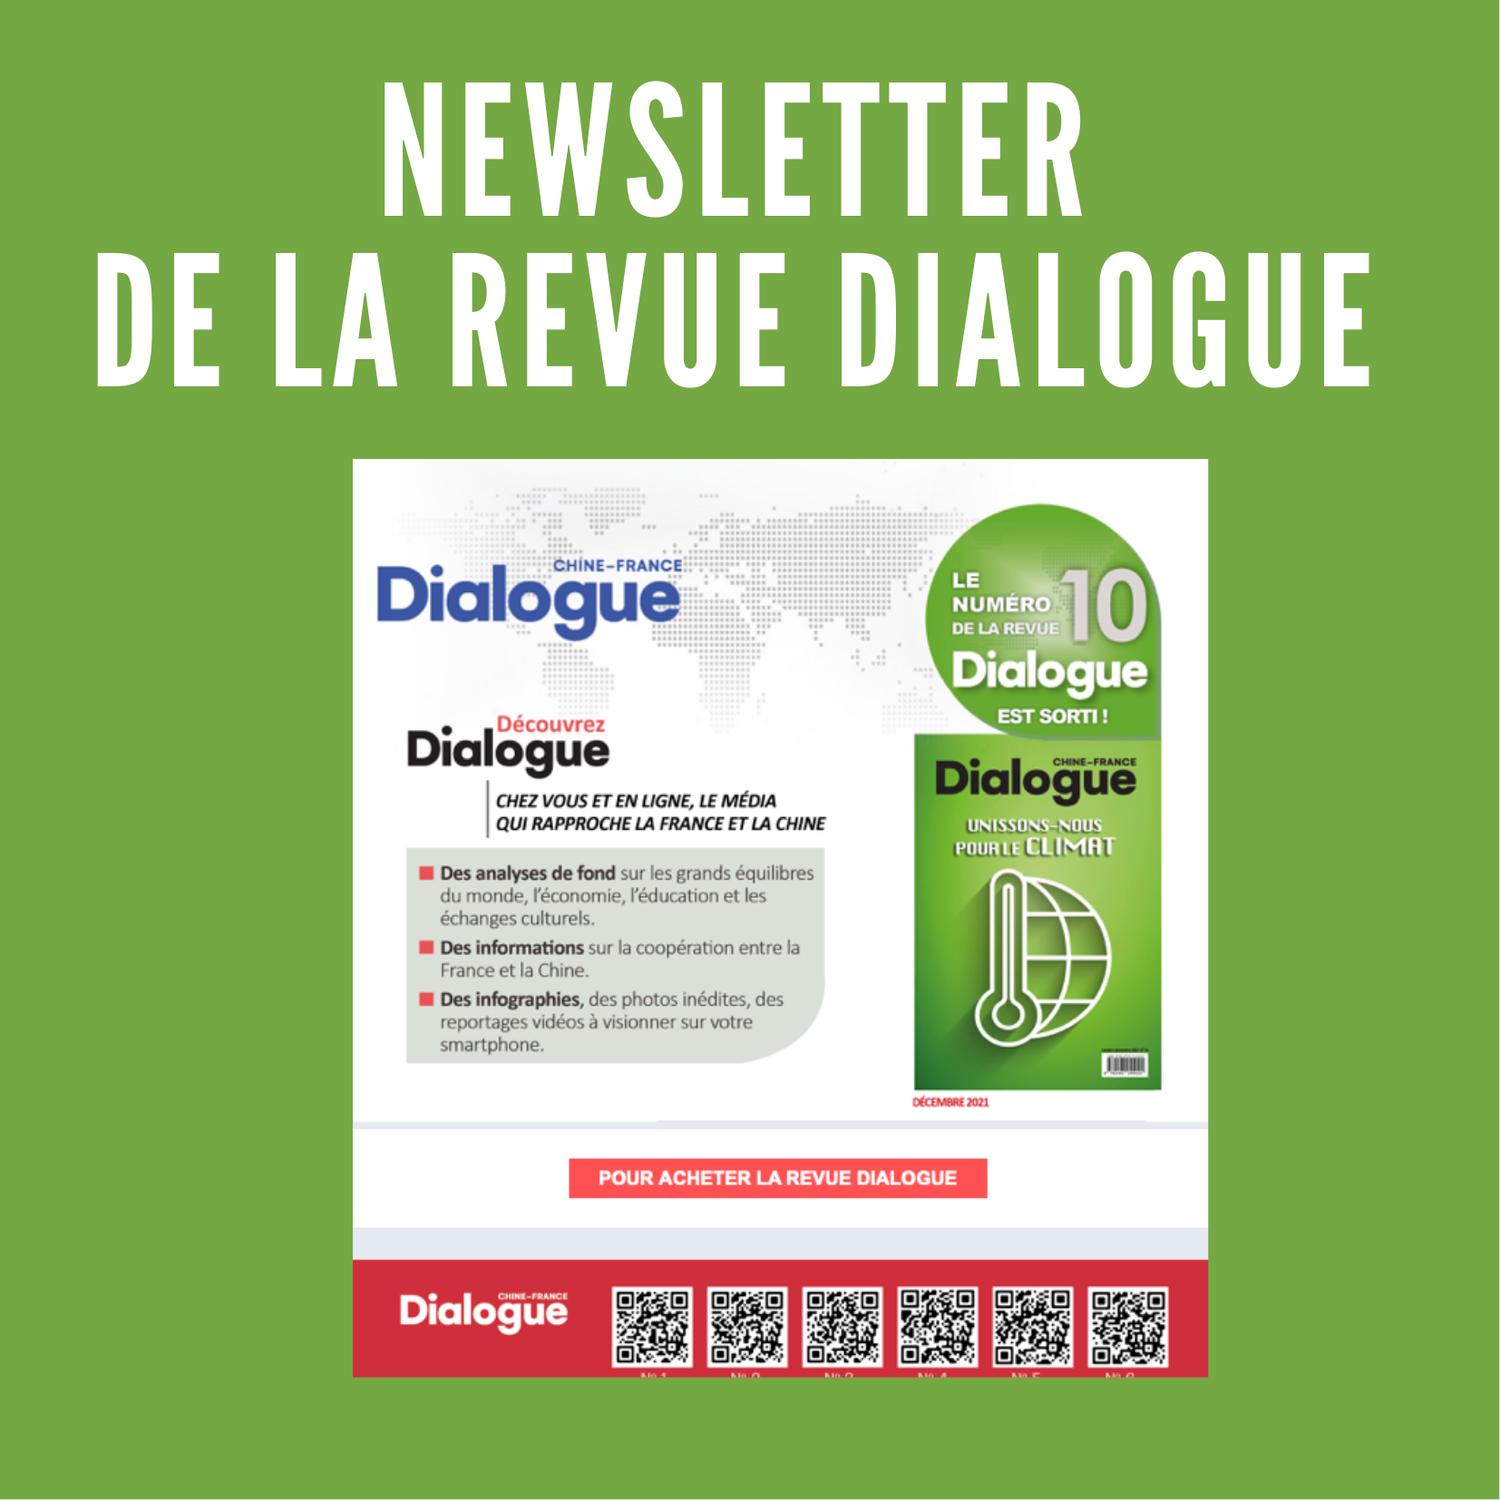 Découvrez la Newsletter de la revue Dialogue